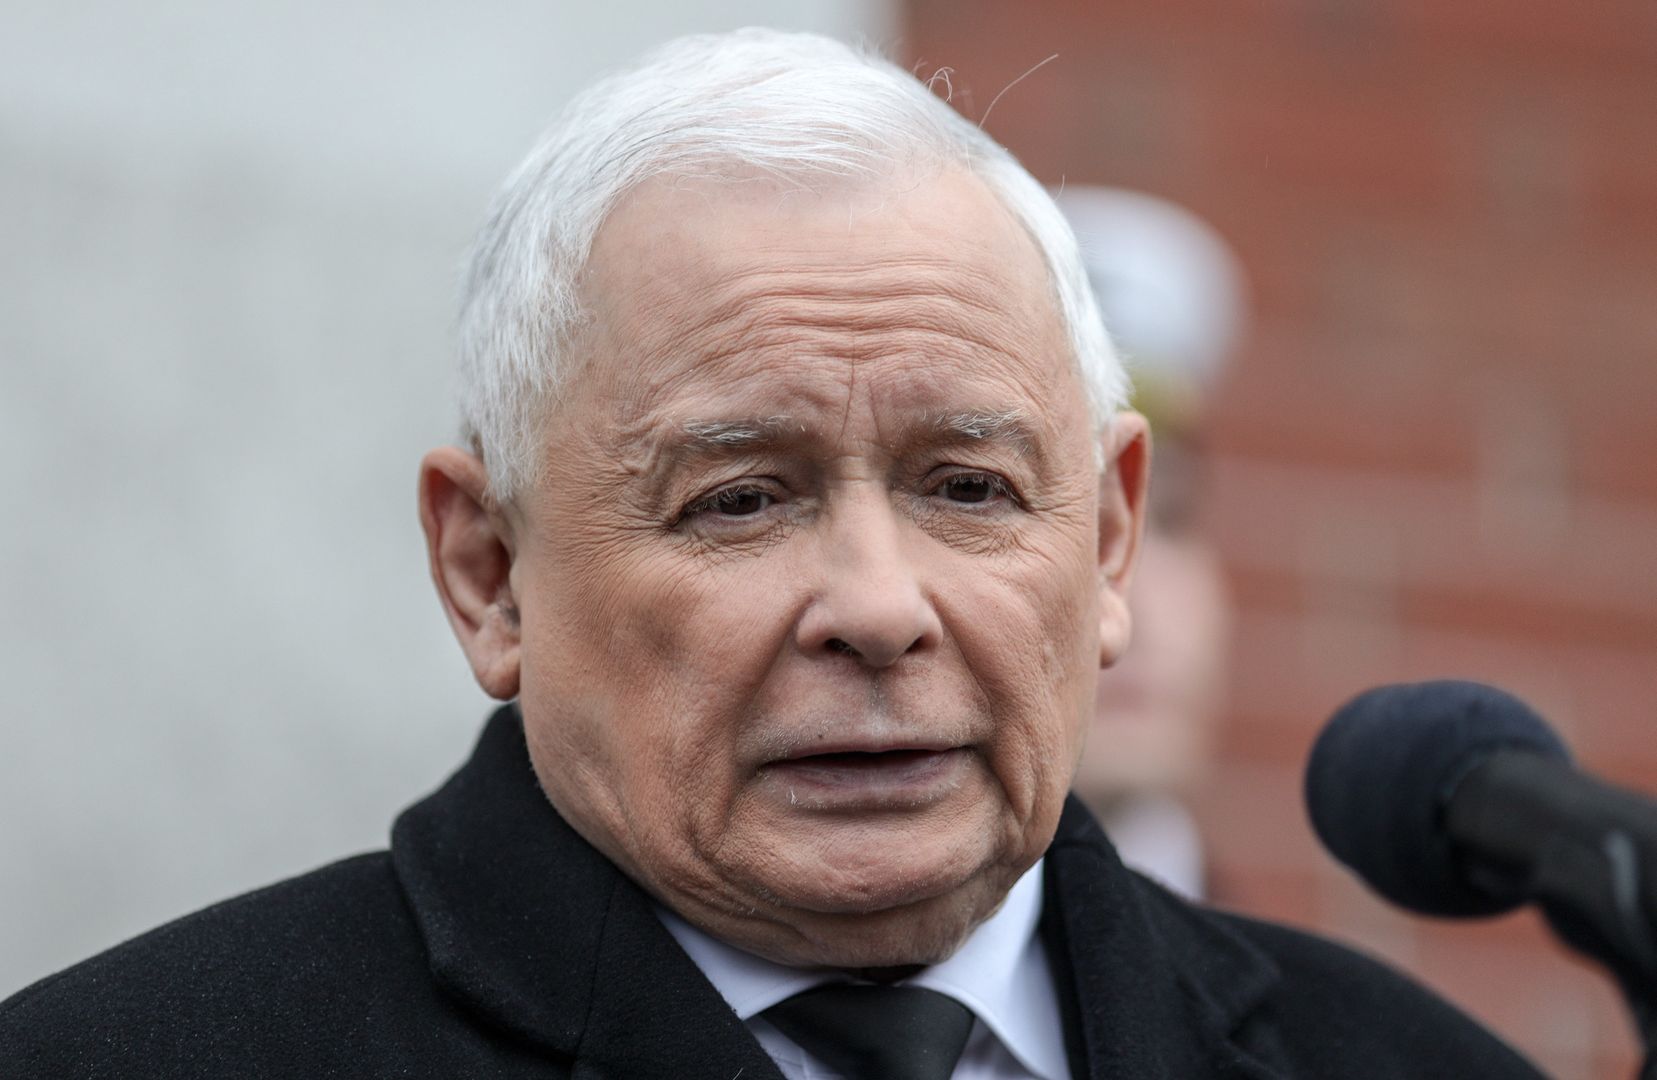 Kaczyńskiego chroniła żandarmeria? "Sprawa jest skandaliczna"